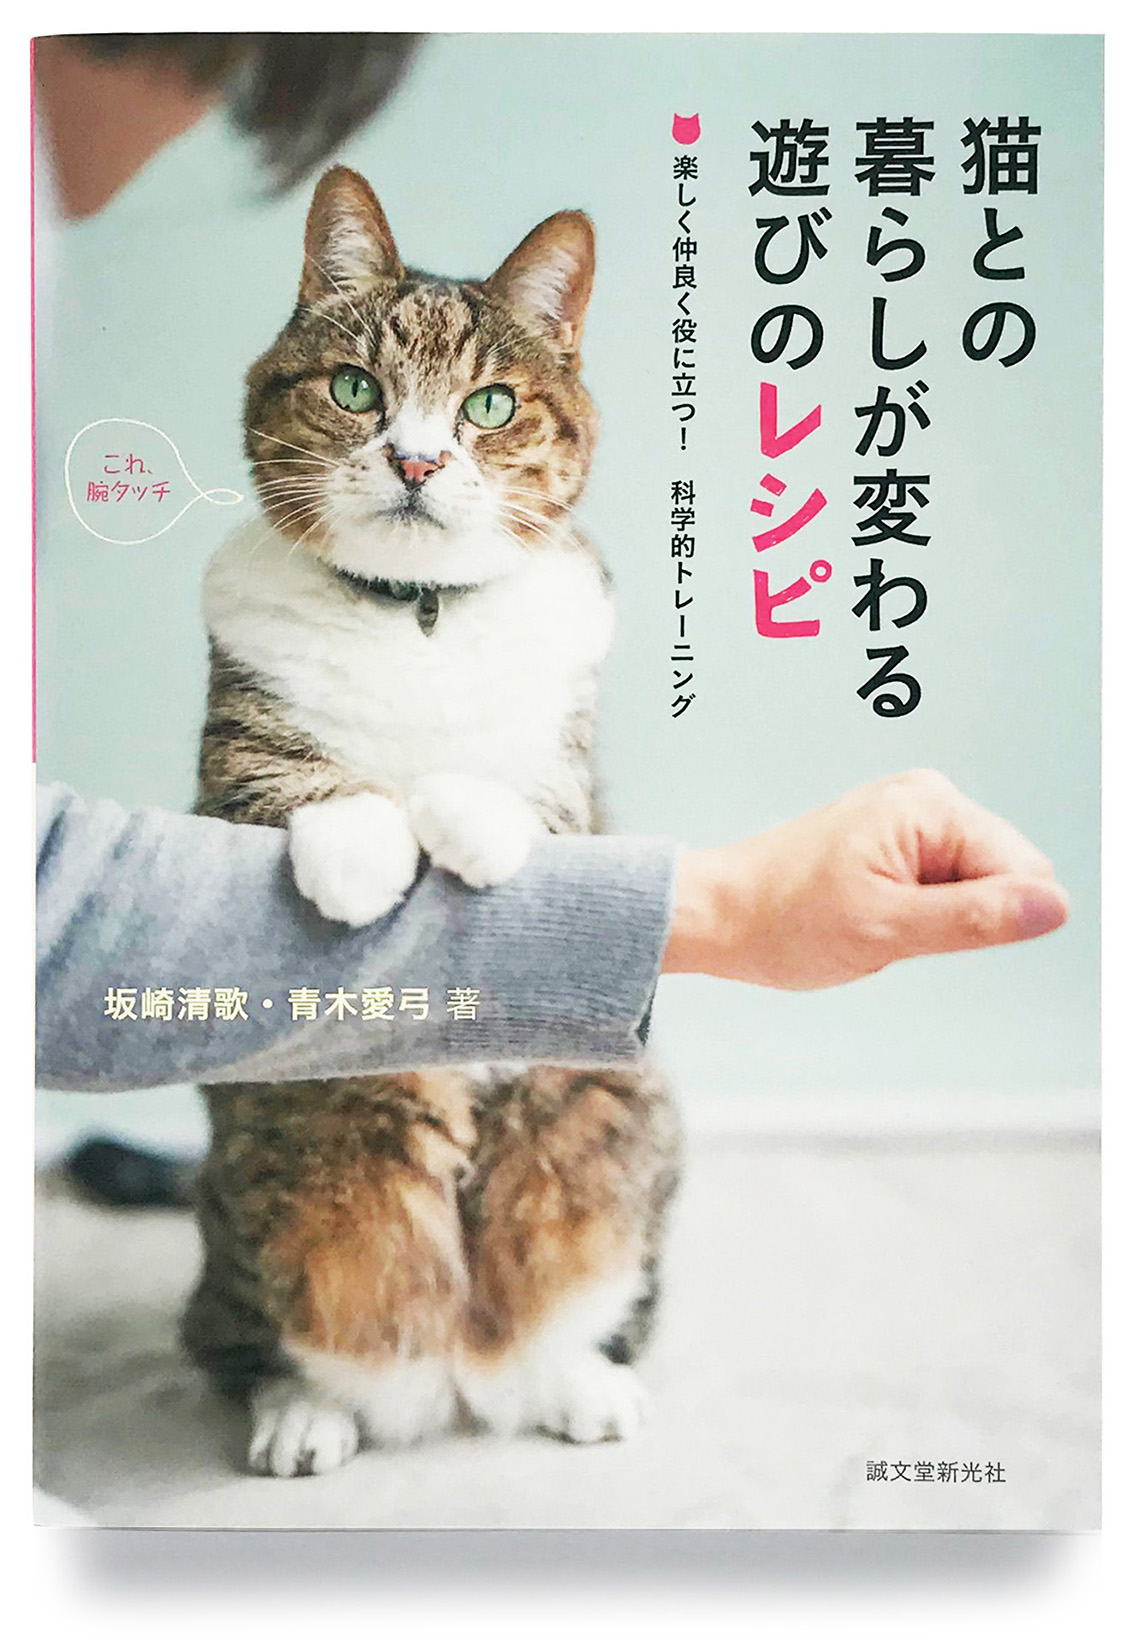 『猫との暮らしが変わる遊びのレシピ 』